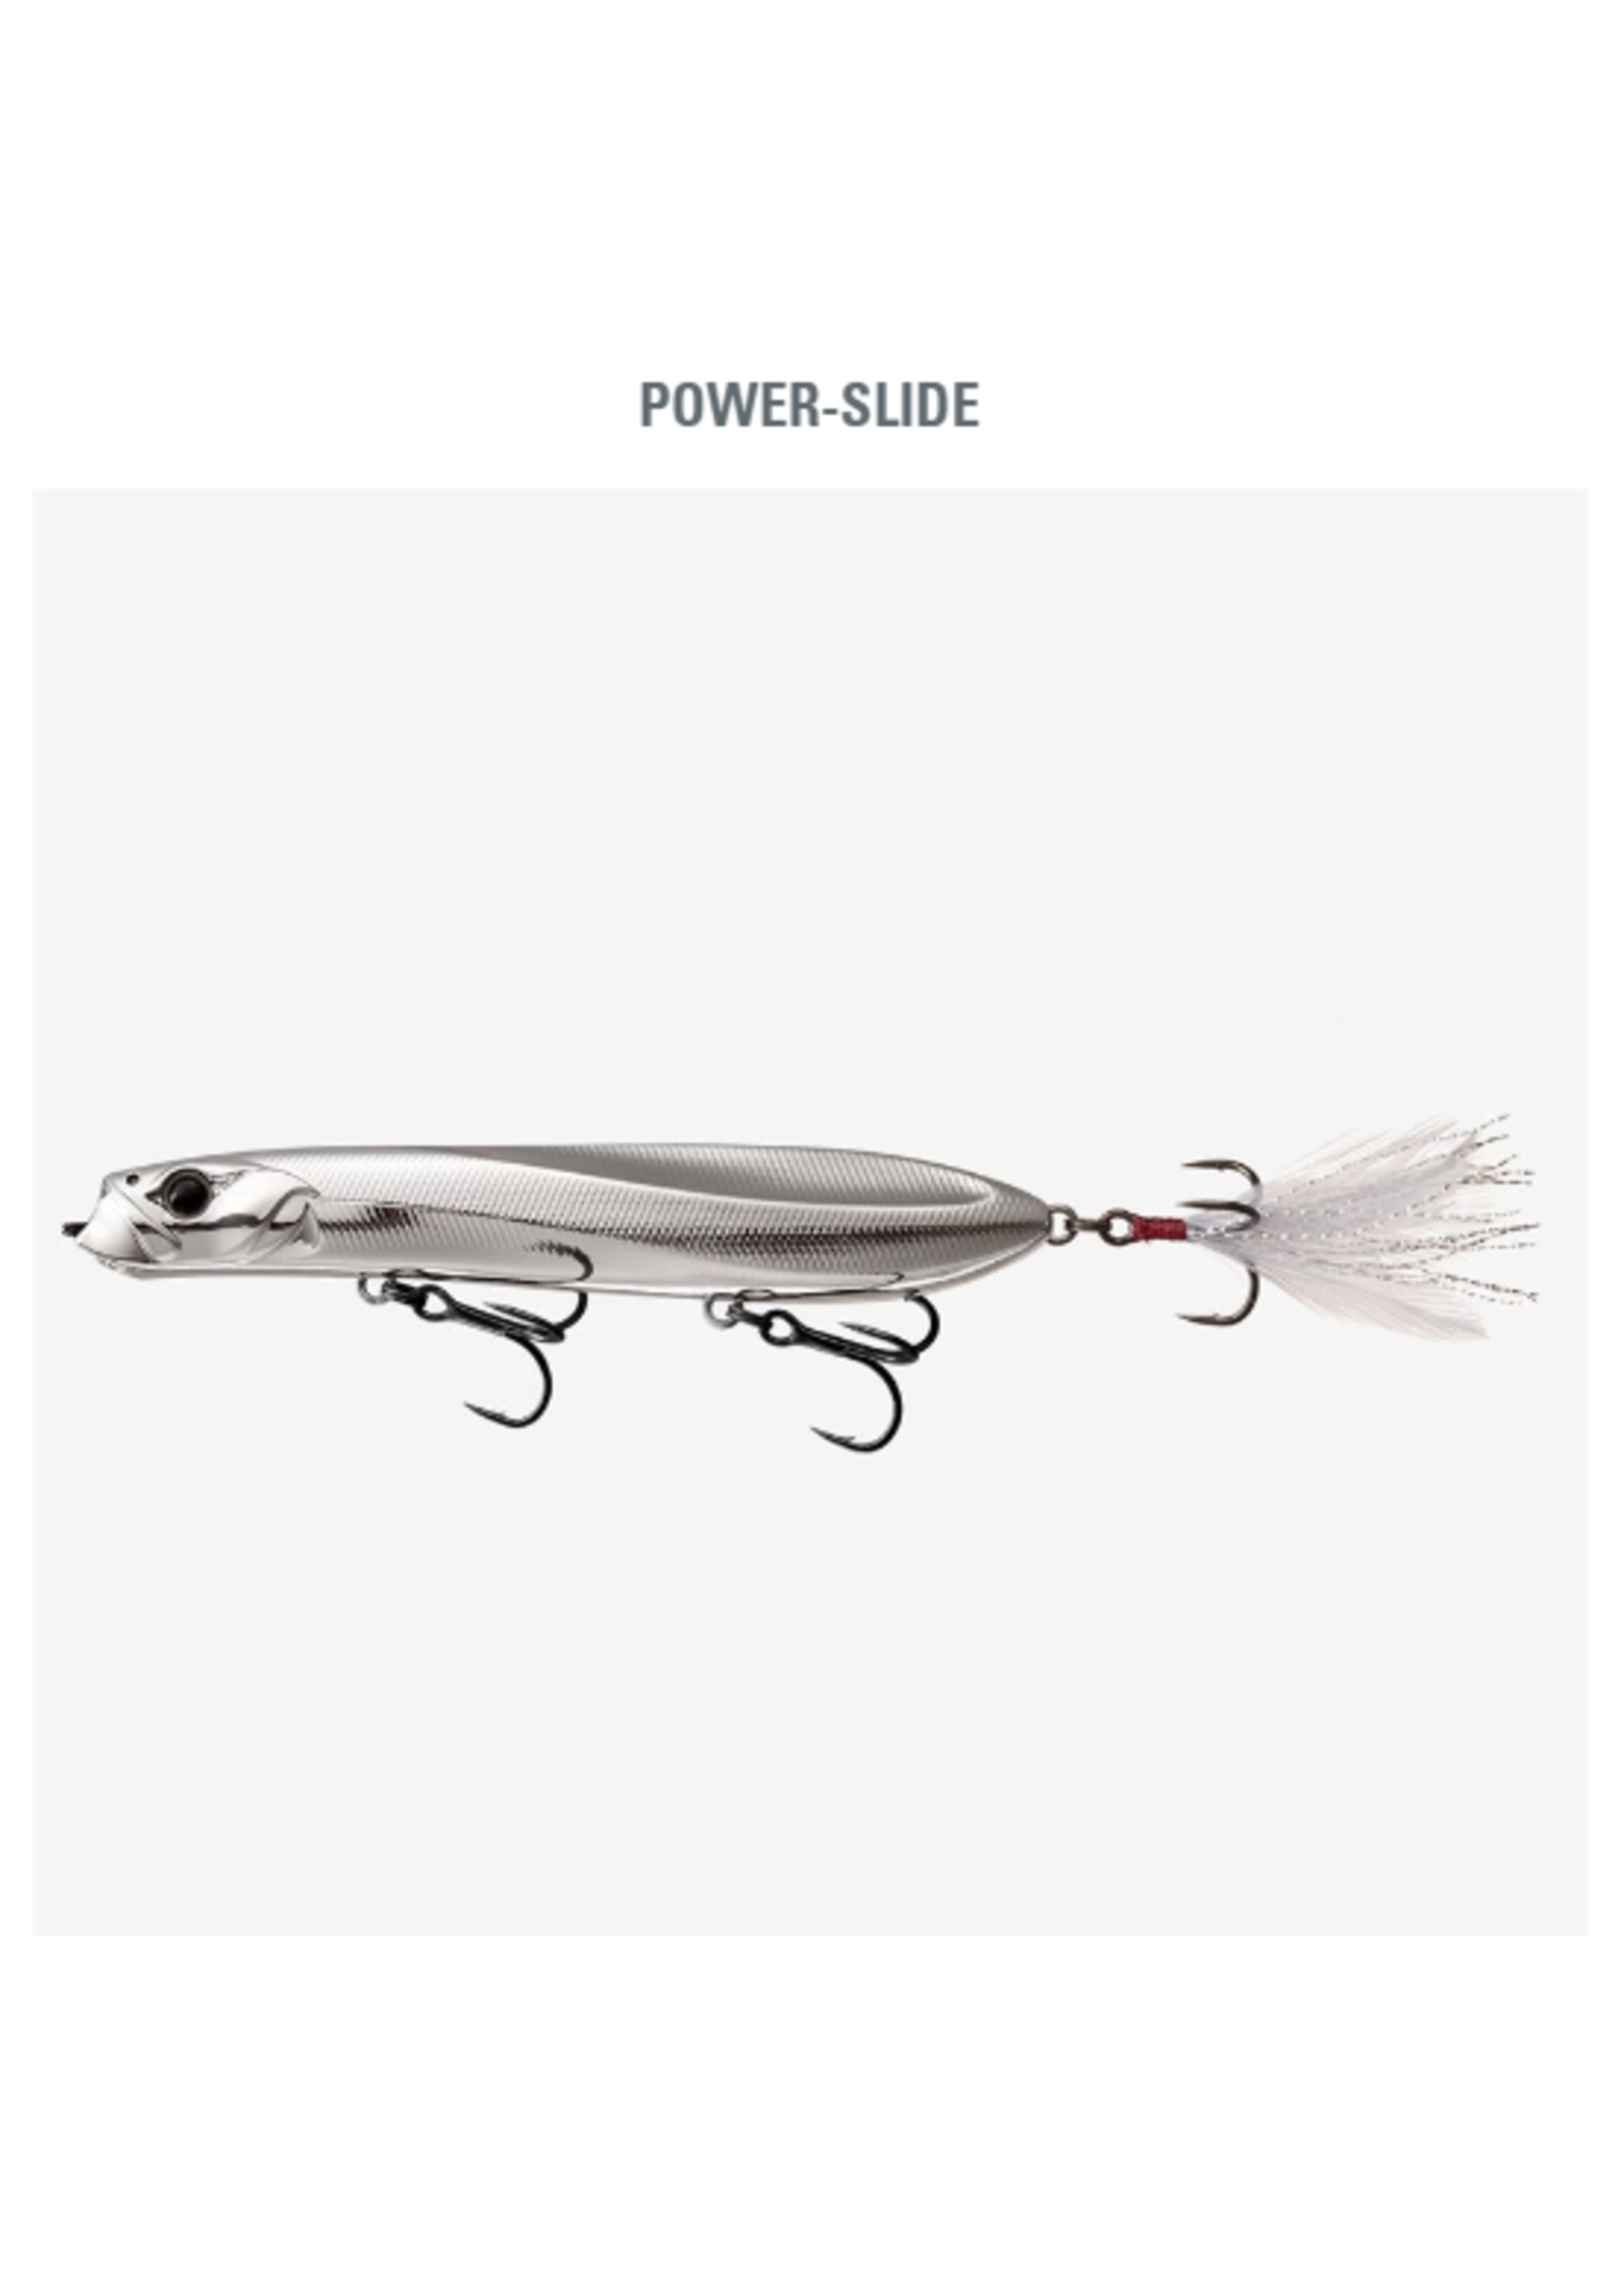 13 Fishing Power-Slide 130 - Chrome